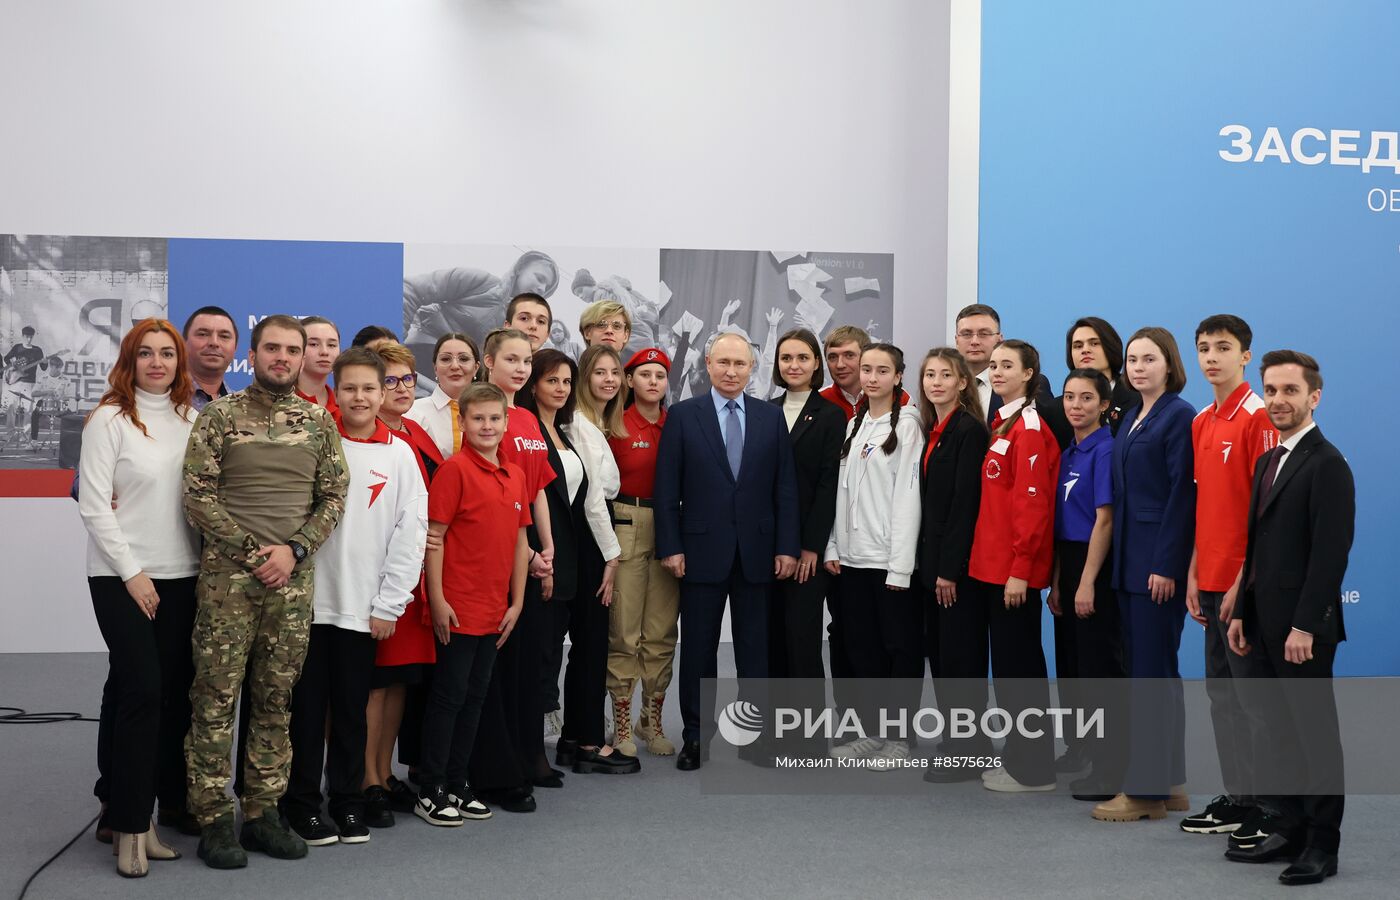 Рабочая поездка президента РФ В. Путина в Пятигорск